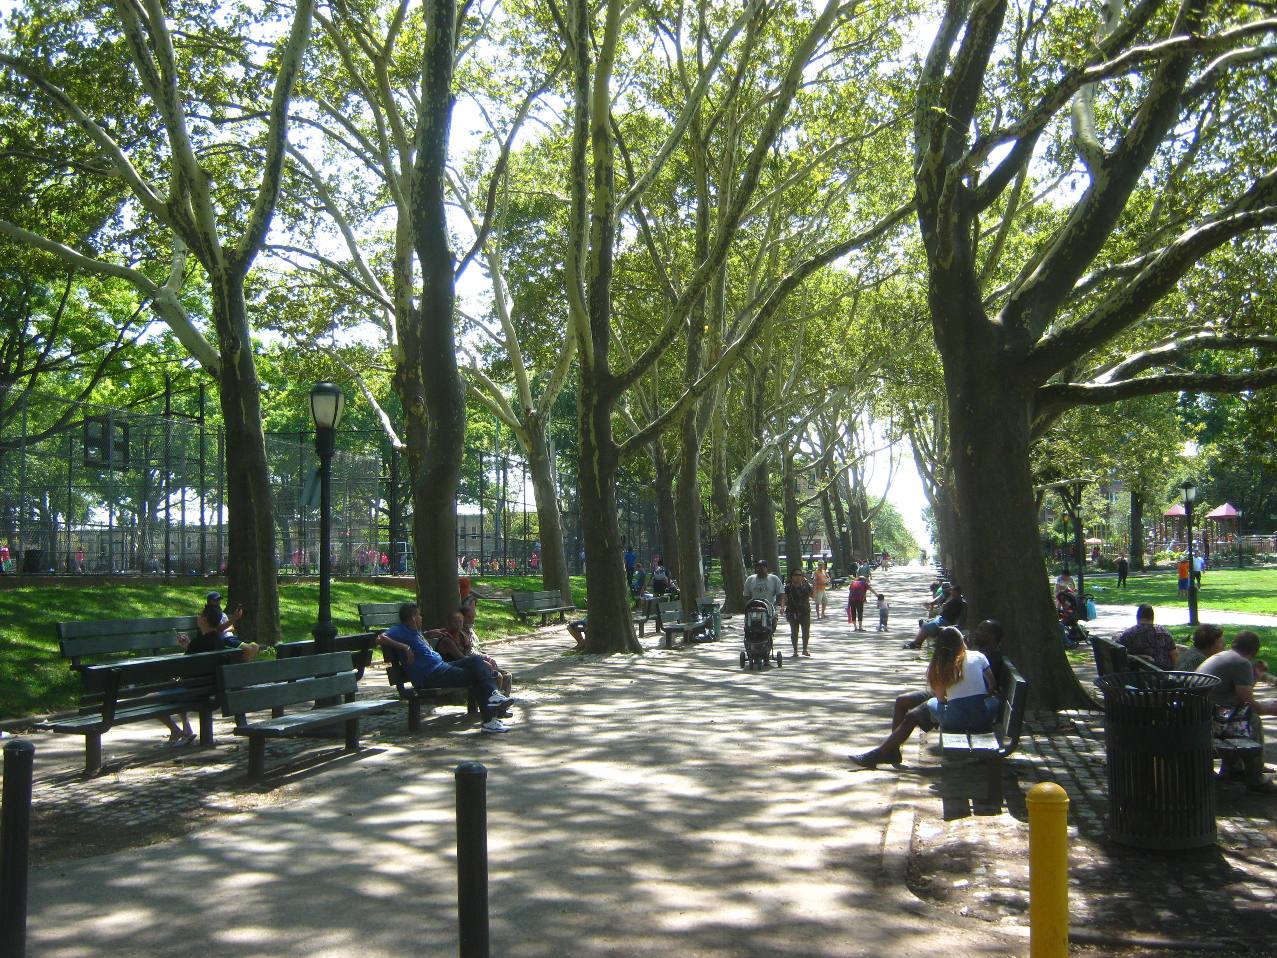 ブルックリン・サンセット公園の木立。